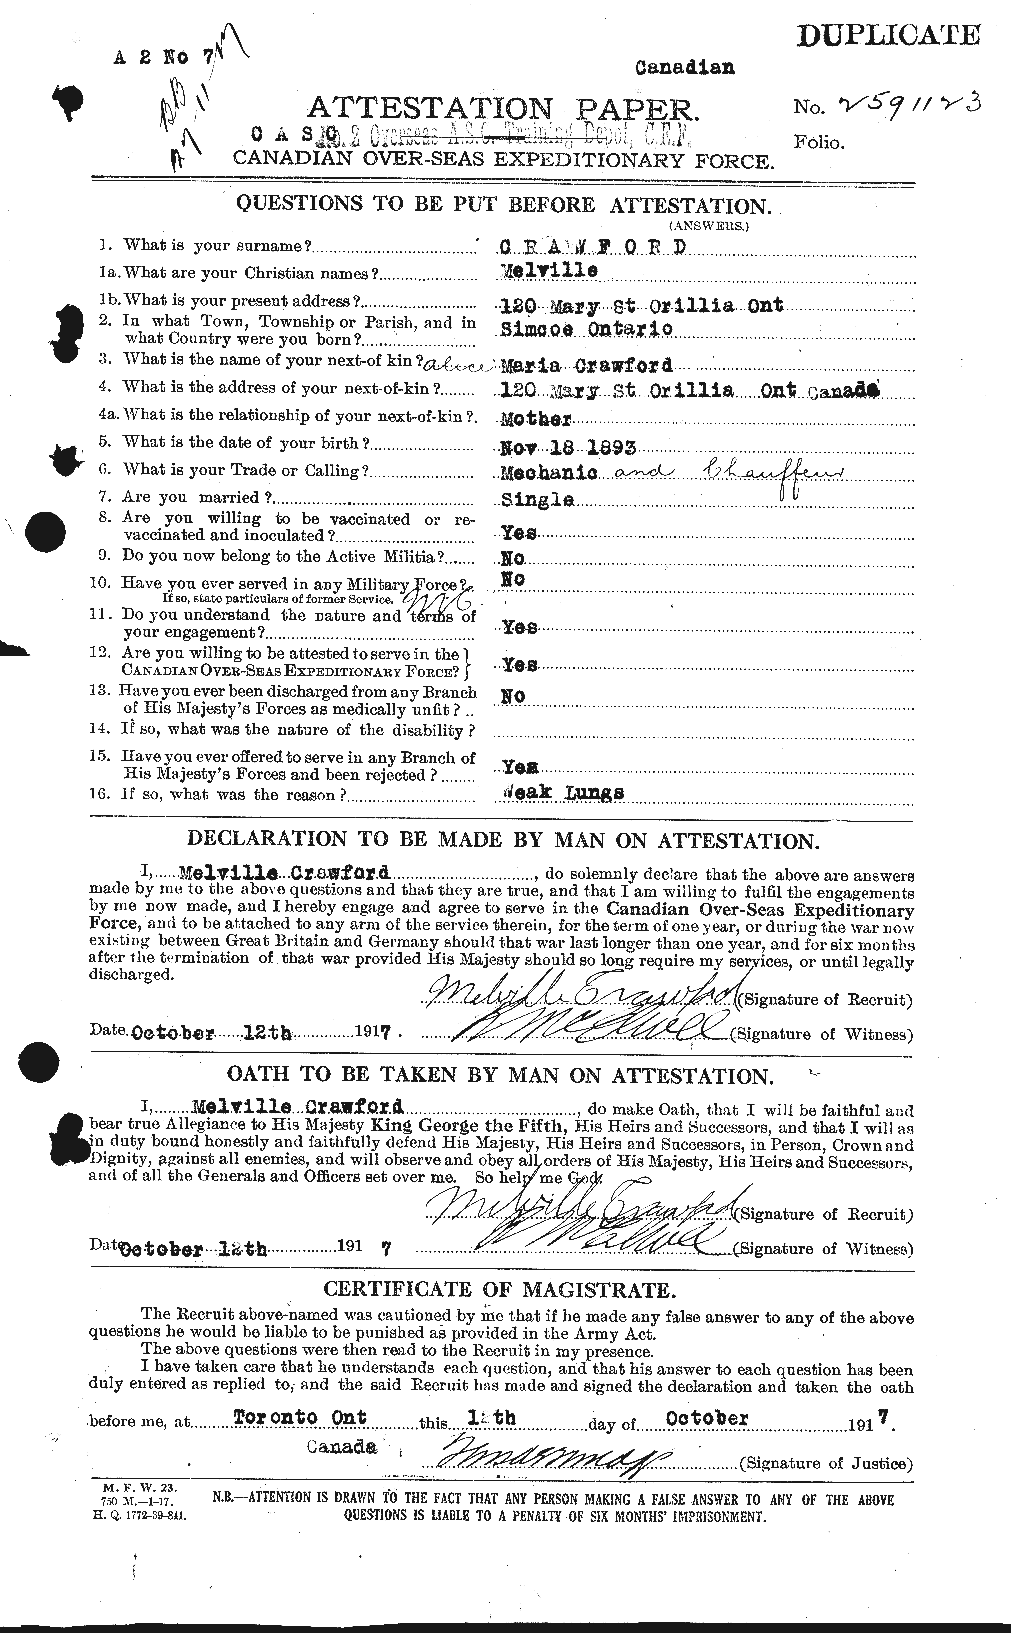 Dossiers du Personnel de la Première Guerre mondiale - CEC 061779a